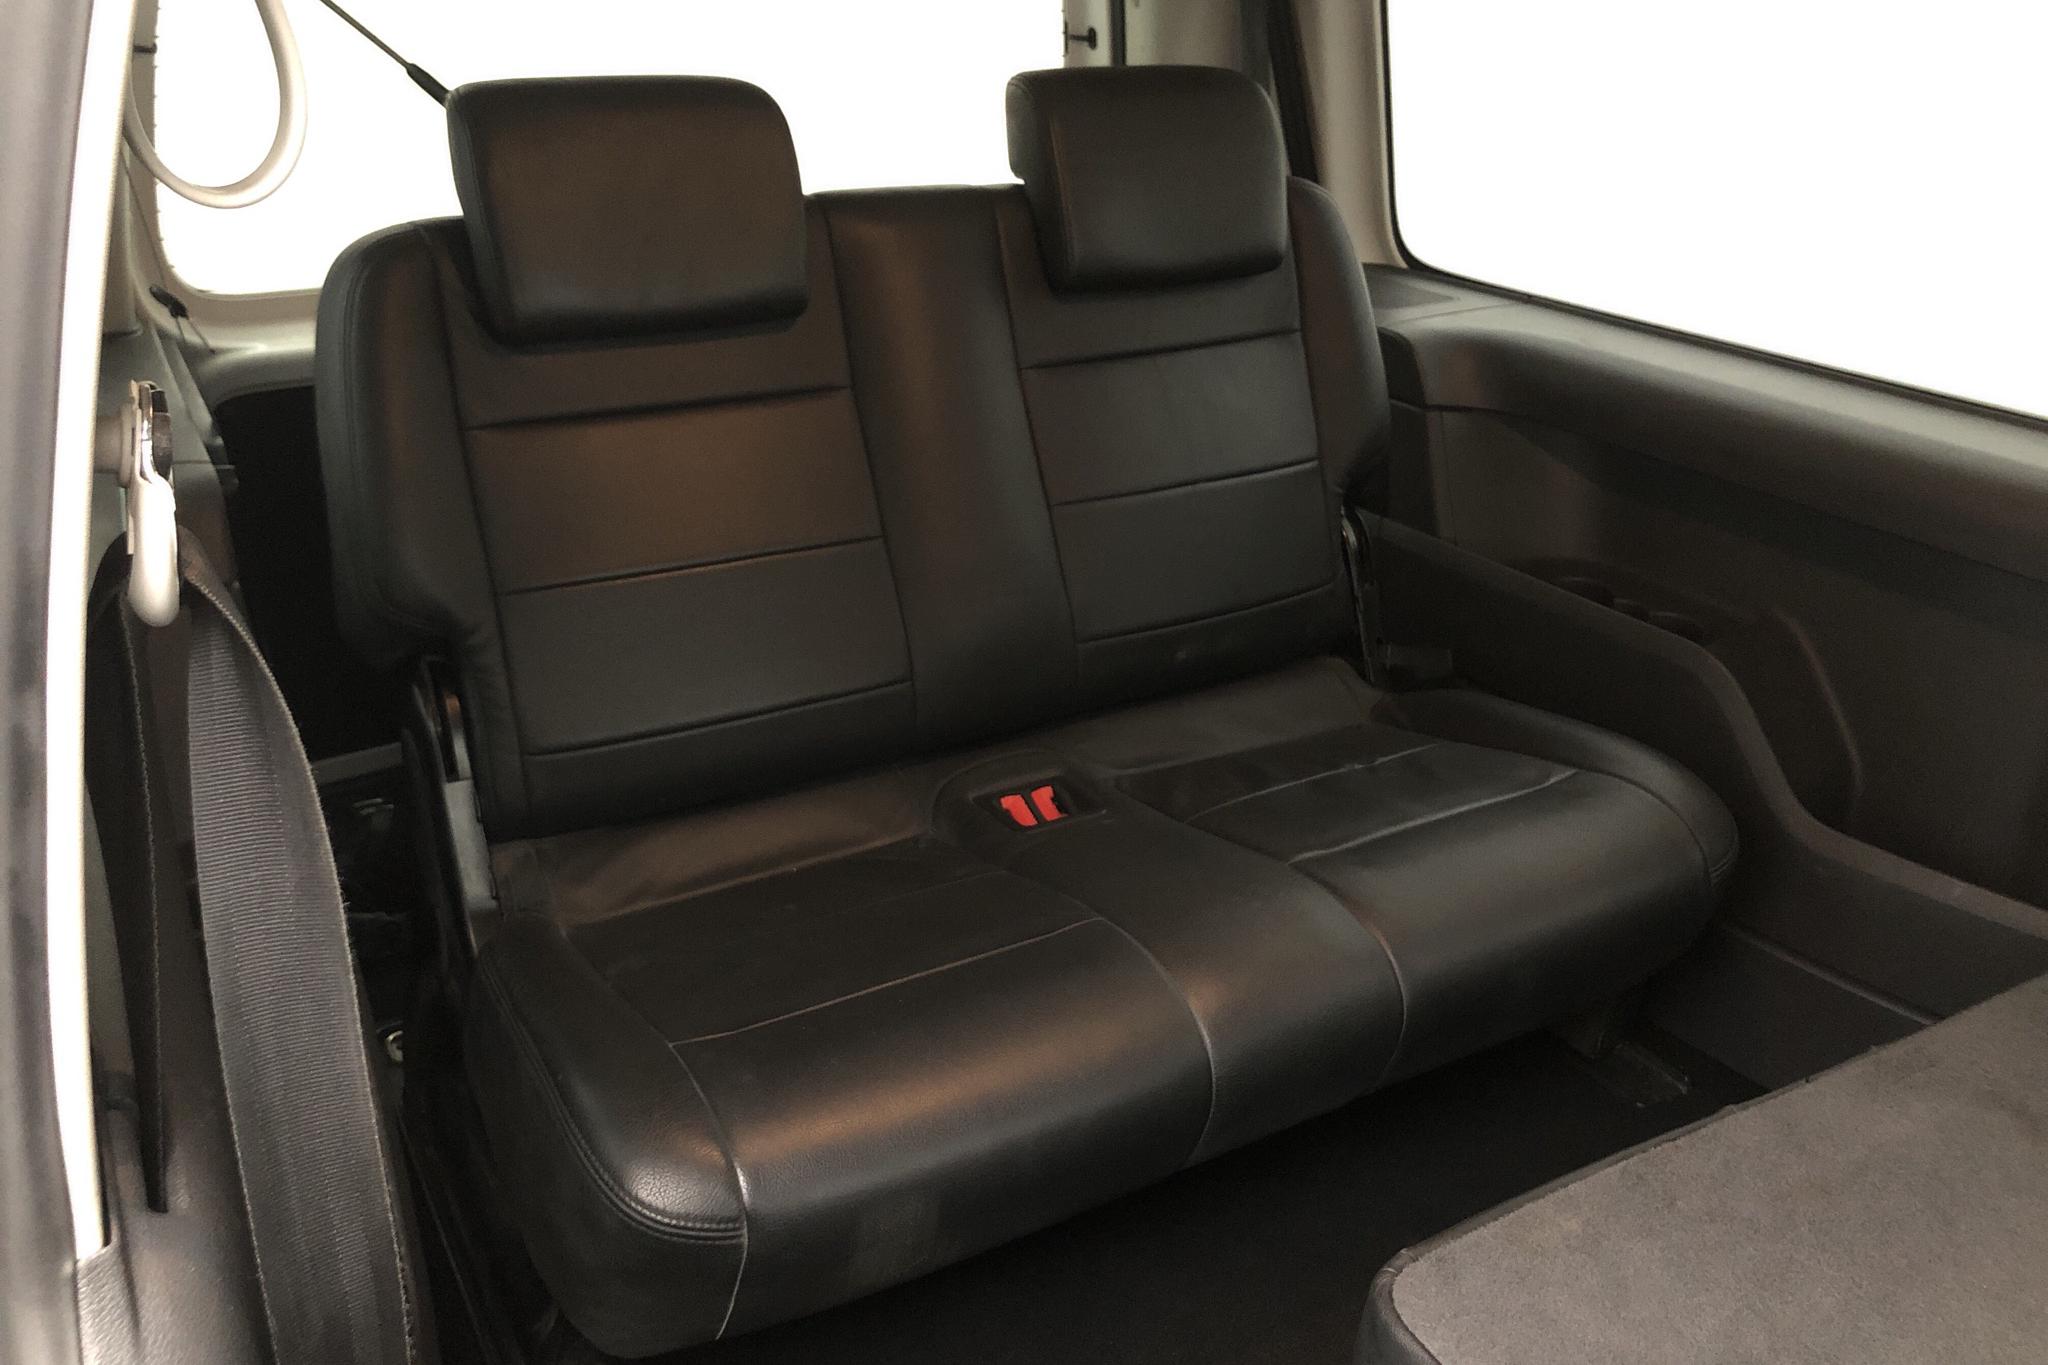 VW Caddy MPV Maxi 2.0 TDI (140hk) - 56 499 mil - Automat - vit - 2012